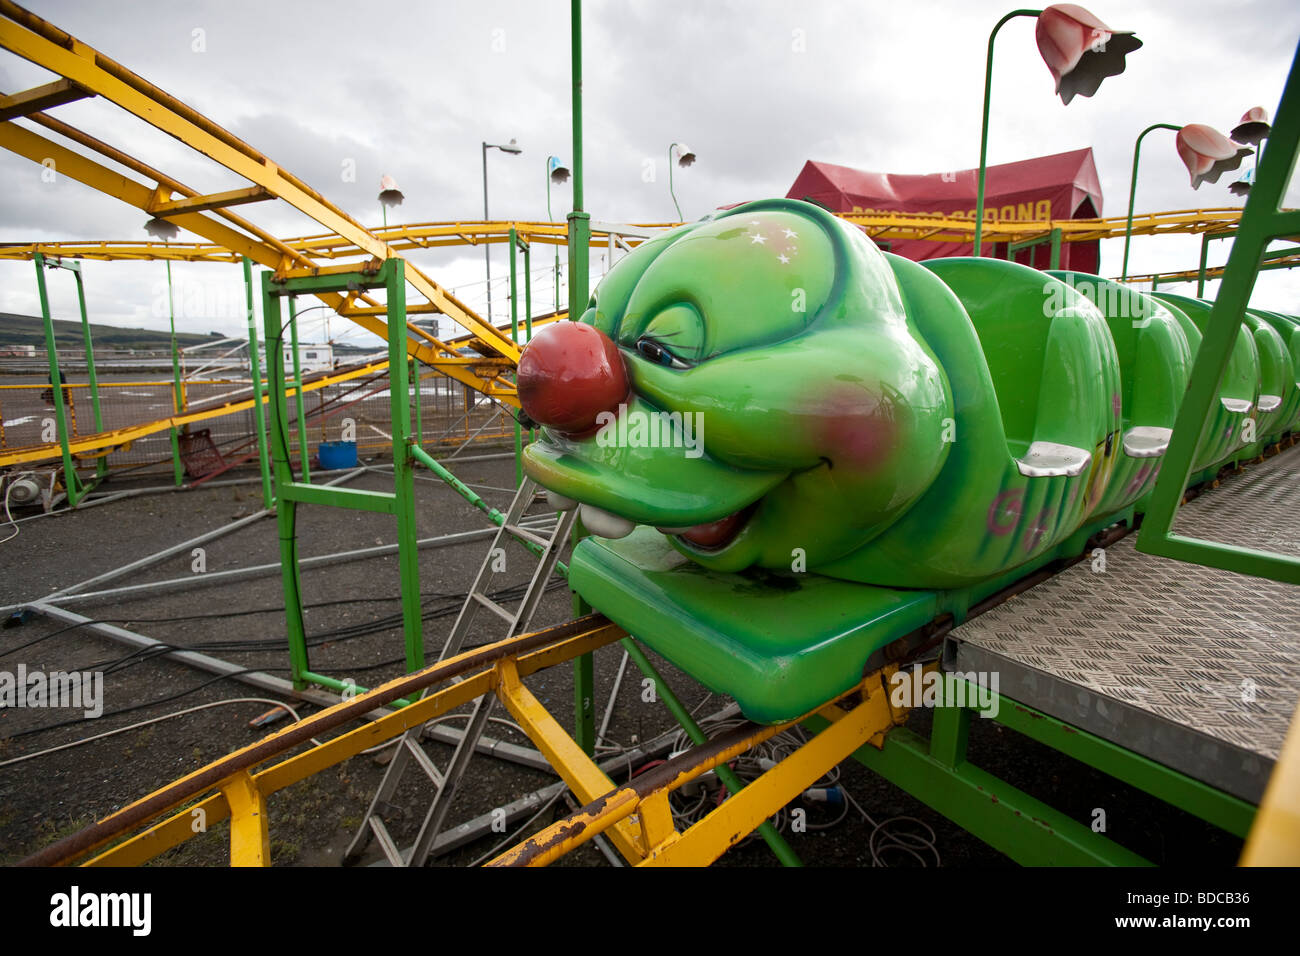 A green caterpillar roller coaster ride at Helensburgh, Scotland. Stock Photo